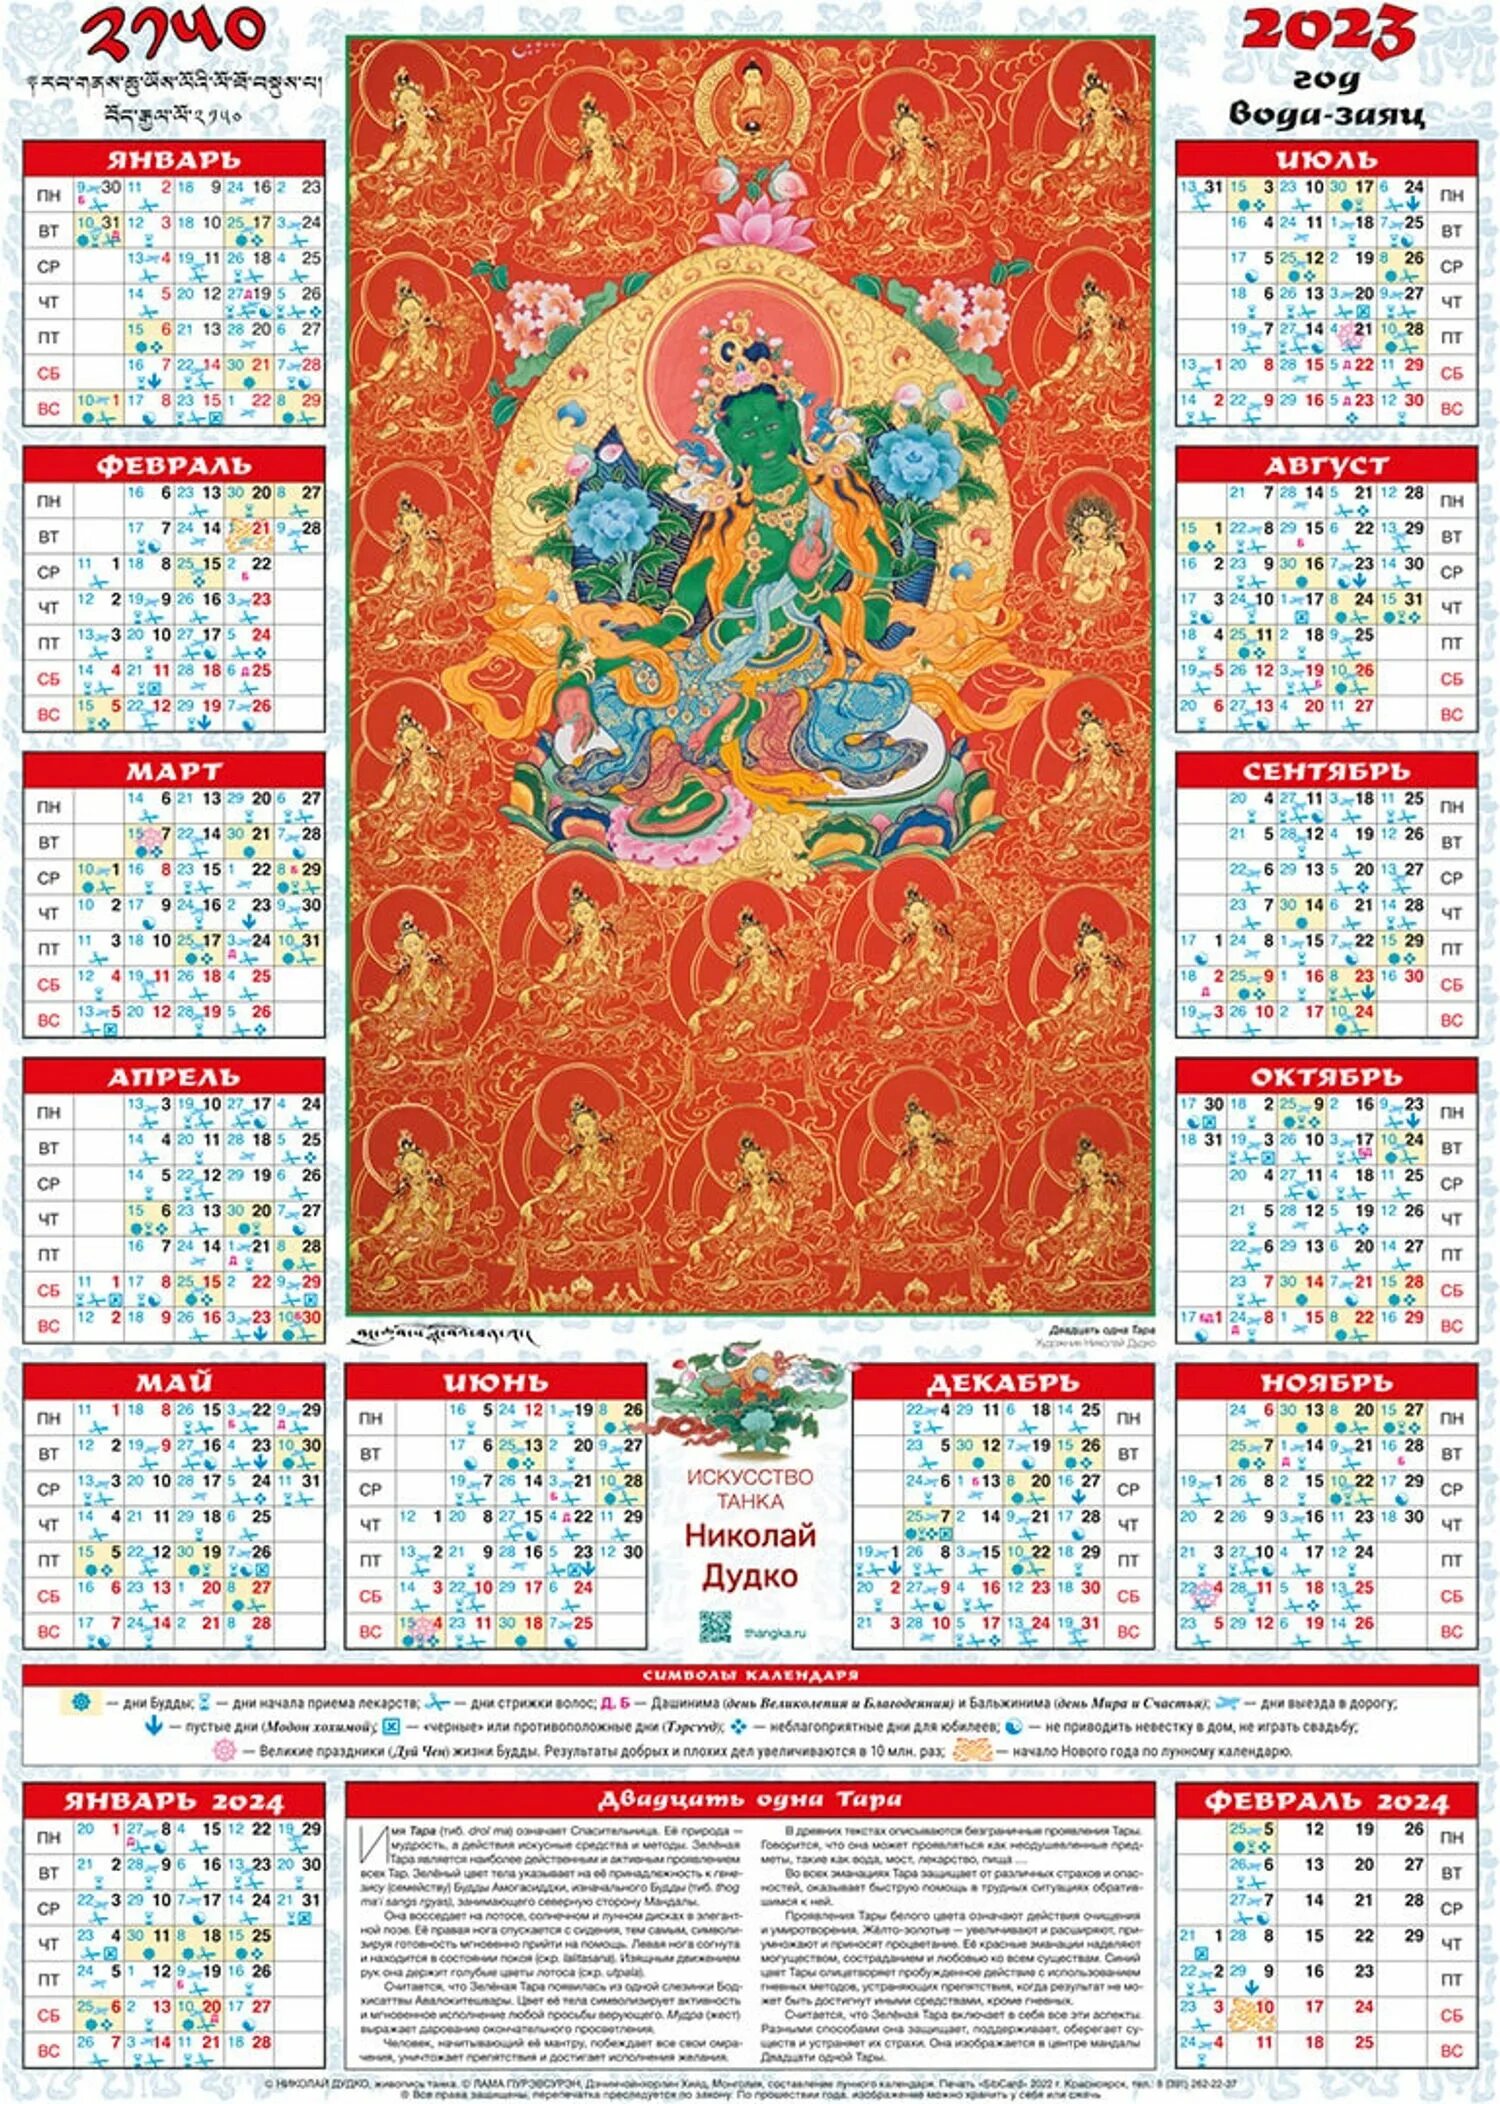 Тибетский календарь 2021. Буддийский лунный календарь на 2023 год Бурятия. Буддийский лунный календарь на 2021 год. Буддийский календарь для стрижки волос 2021.